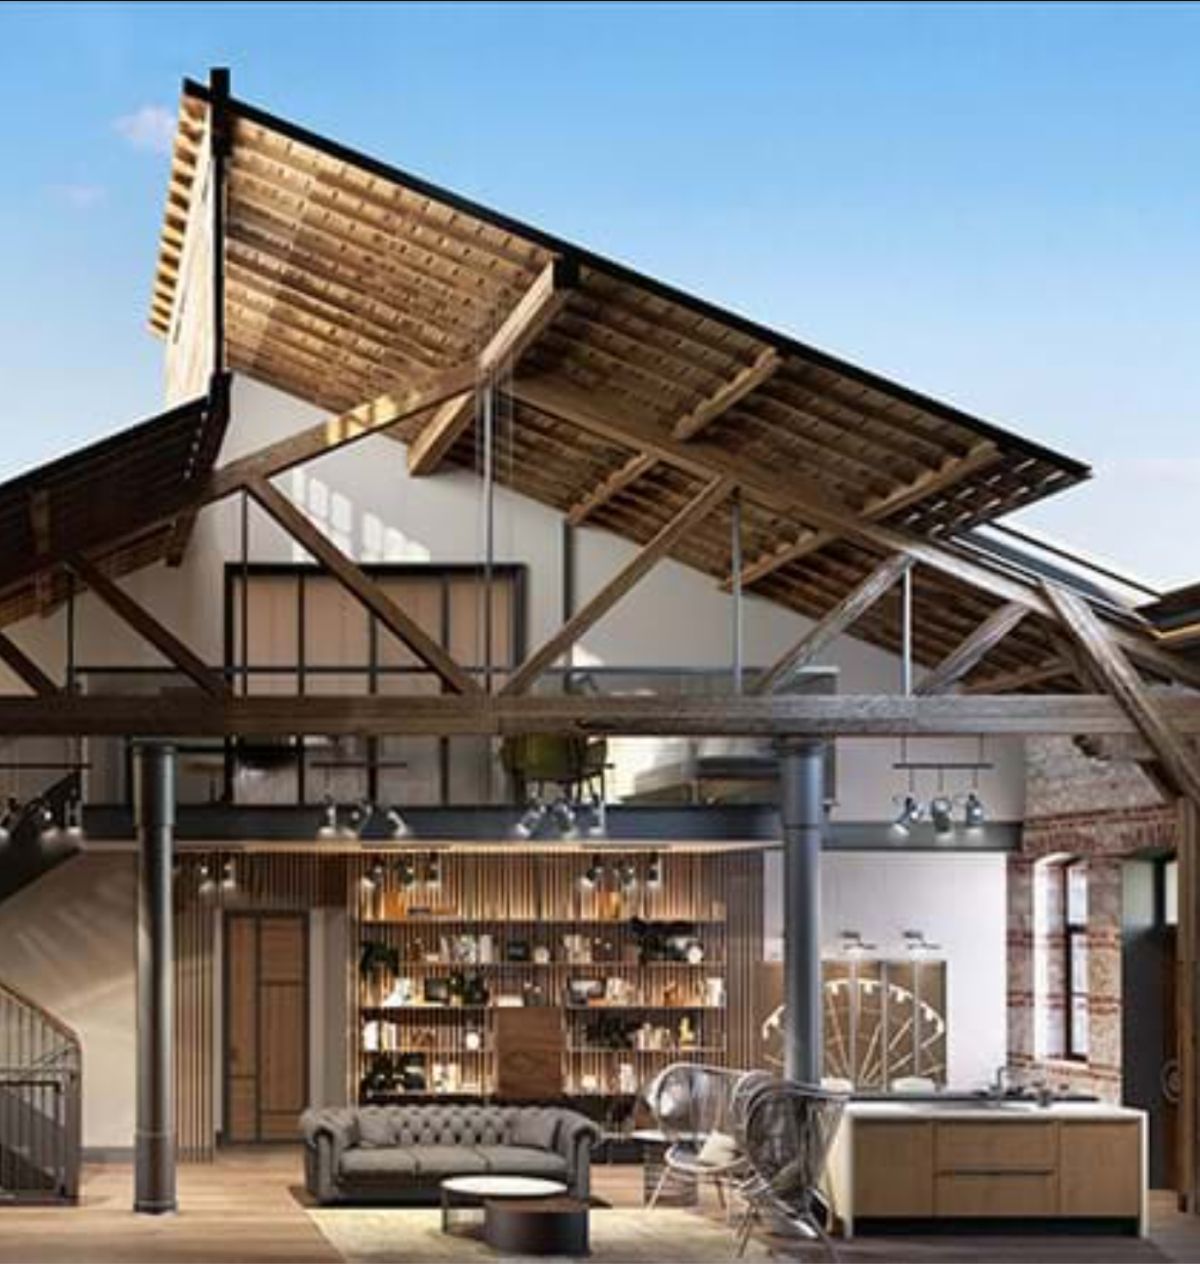 Imaginea fotorealistă din faza de proiect (randarea) te poate lămuri asupra modului cum e conceput interiorul, mai exact cum este configurat spațiul de la etaj și cum arată de fapt acoperișul.